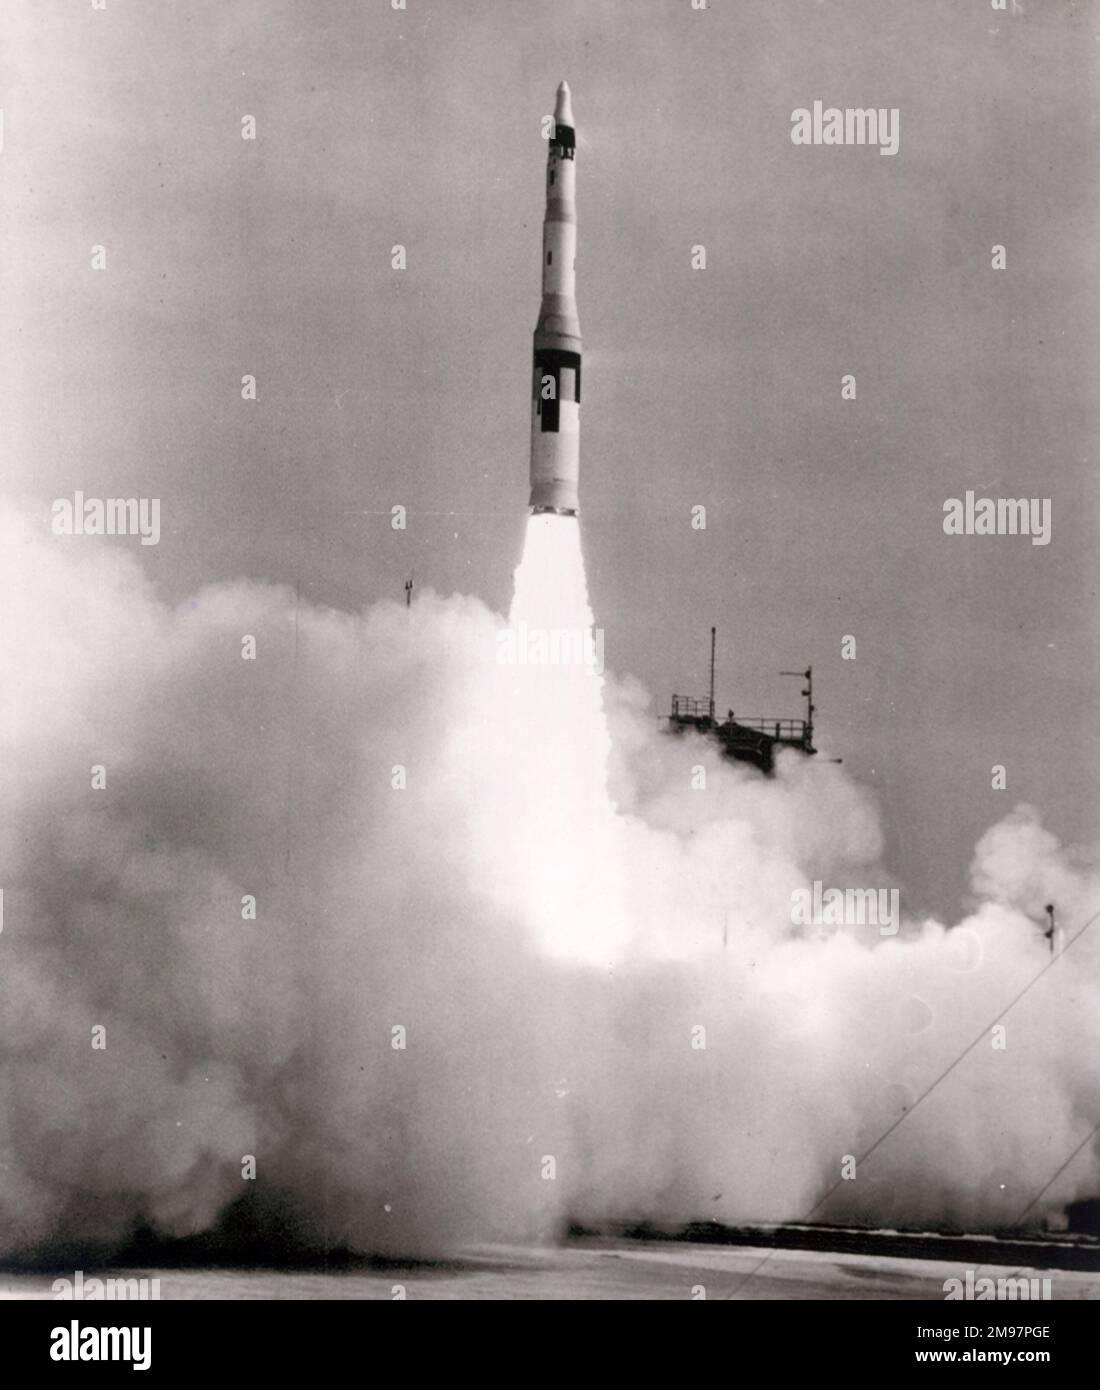 Die Boeing SM-80 Minuteman ICBM startet am 19. Mai 1961 auf einem Testflug ab Cape Canaveral. Die Rakete musste zerstört werden, nachdem sie nach der zweiten Zündstufe vom Kurs abgewichen war. Stockfoto